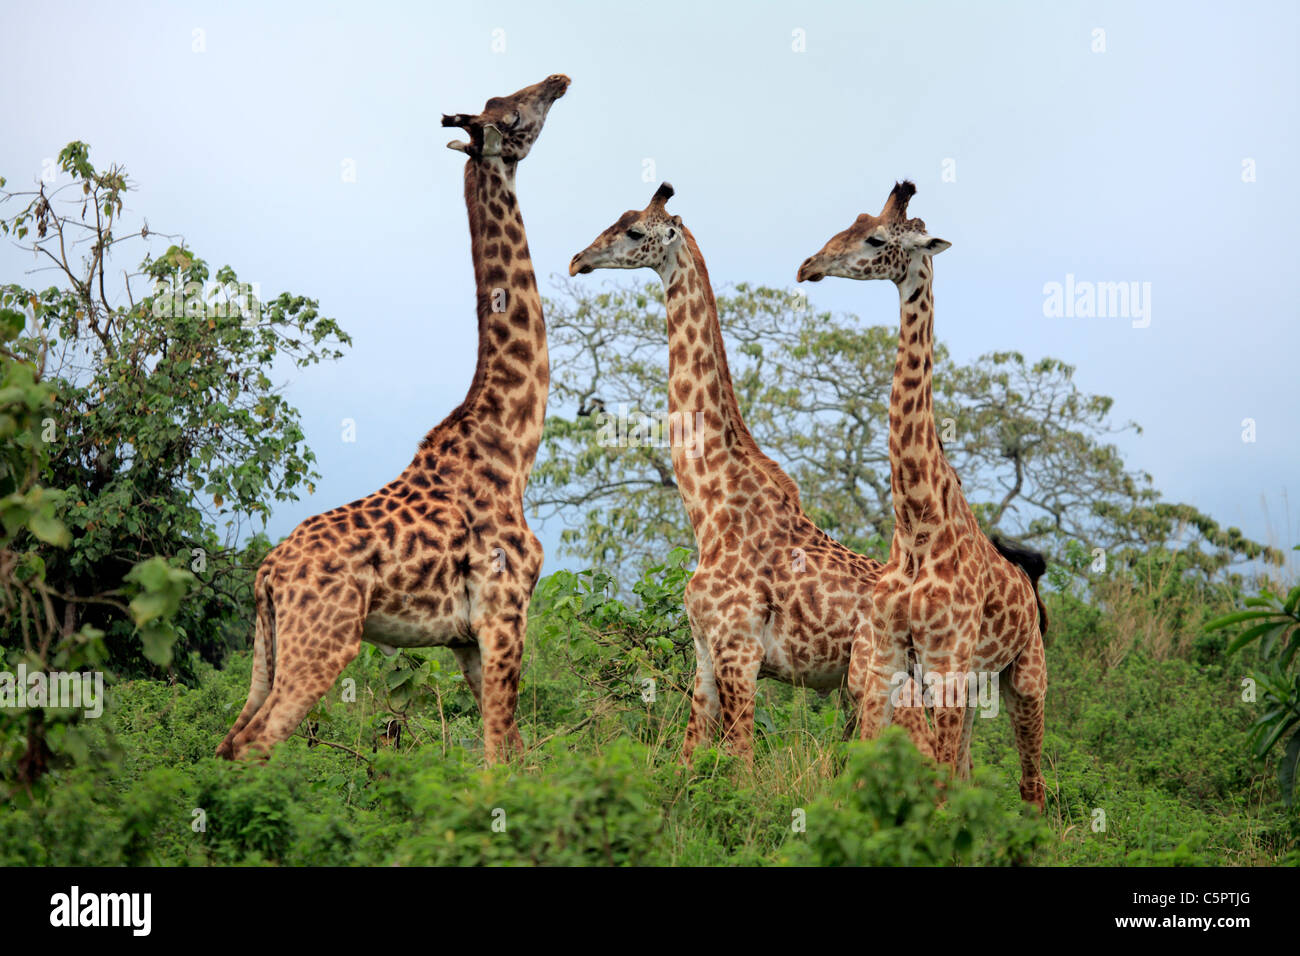 Giraffa camelopardalis (la jirafa), el parque nacional de Arusha, Tanzania Foto de stock